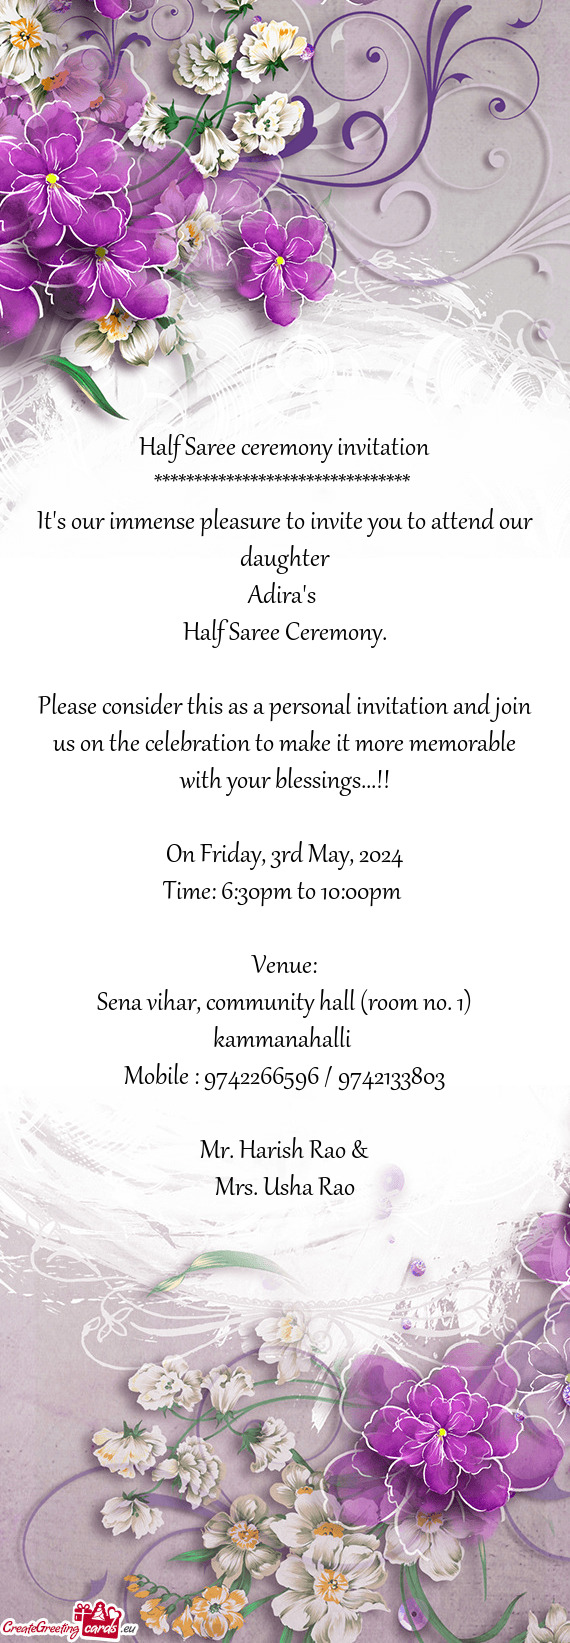 Half Saree ceremony invitation ******************************** It's our immense pleasure to invi